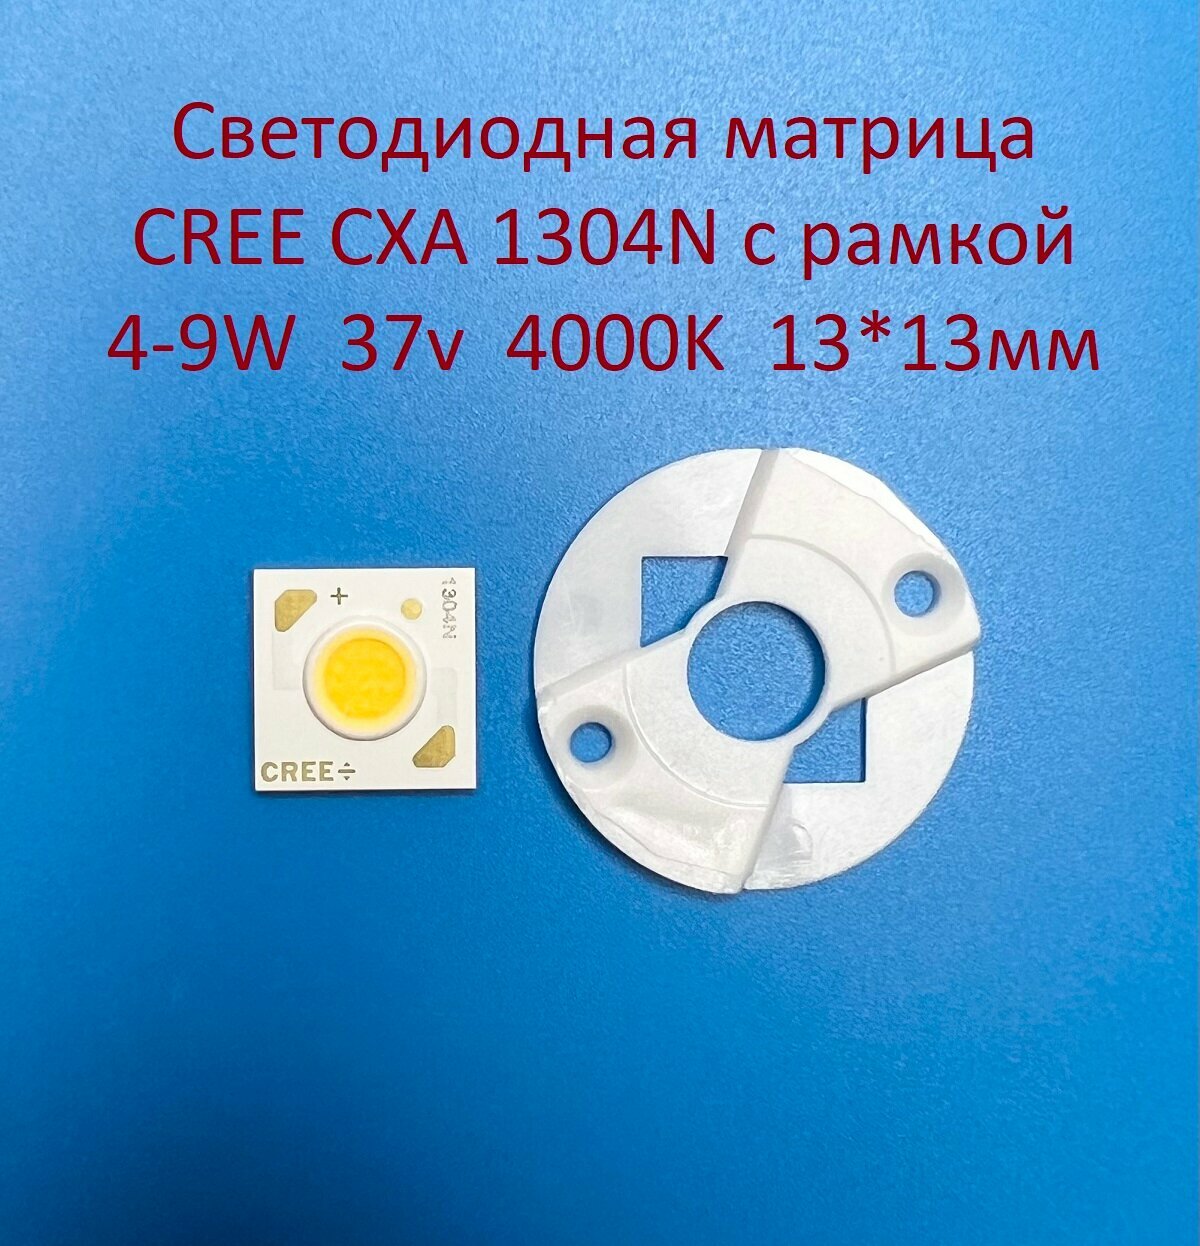 Светодиодная матрица Cree CXA 1304N 4-9W 37v 100-250mA Белая нейтральная 4000K 13*13мм с рамкой